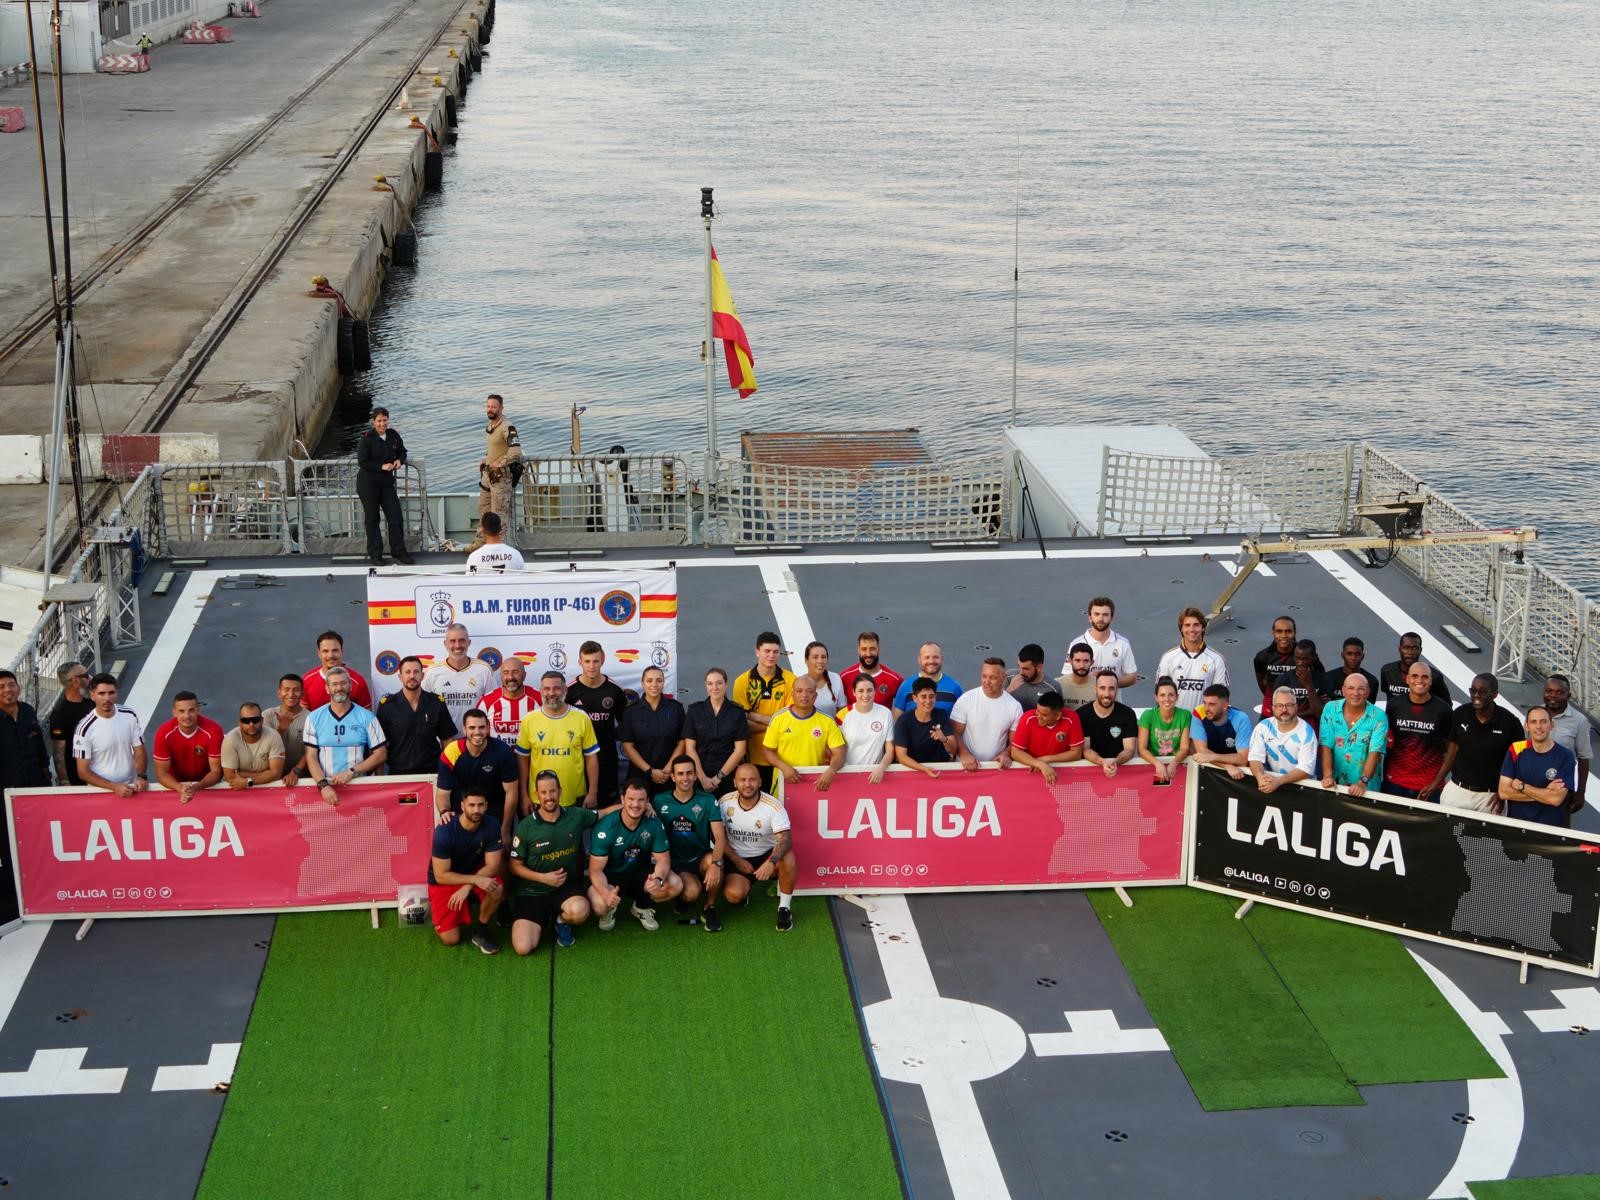 'LaLiga' event participants